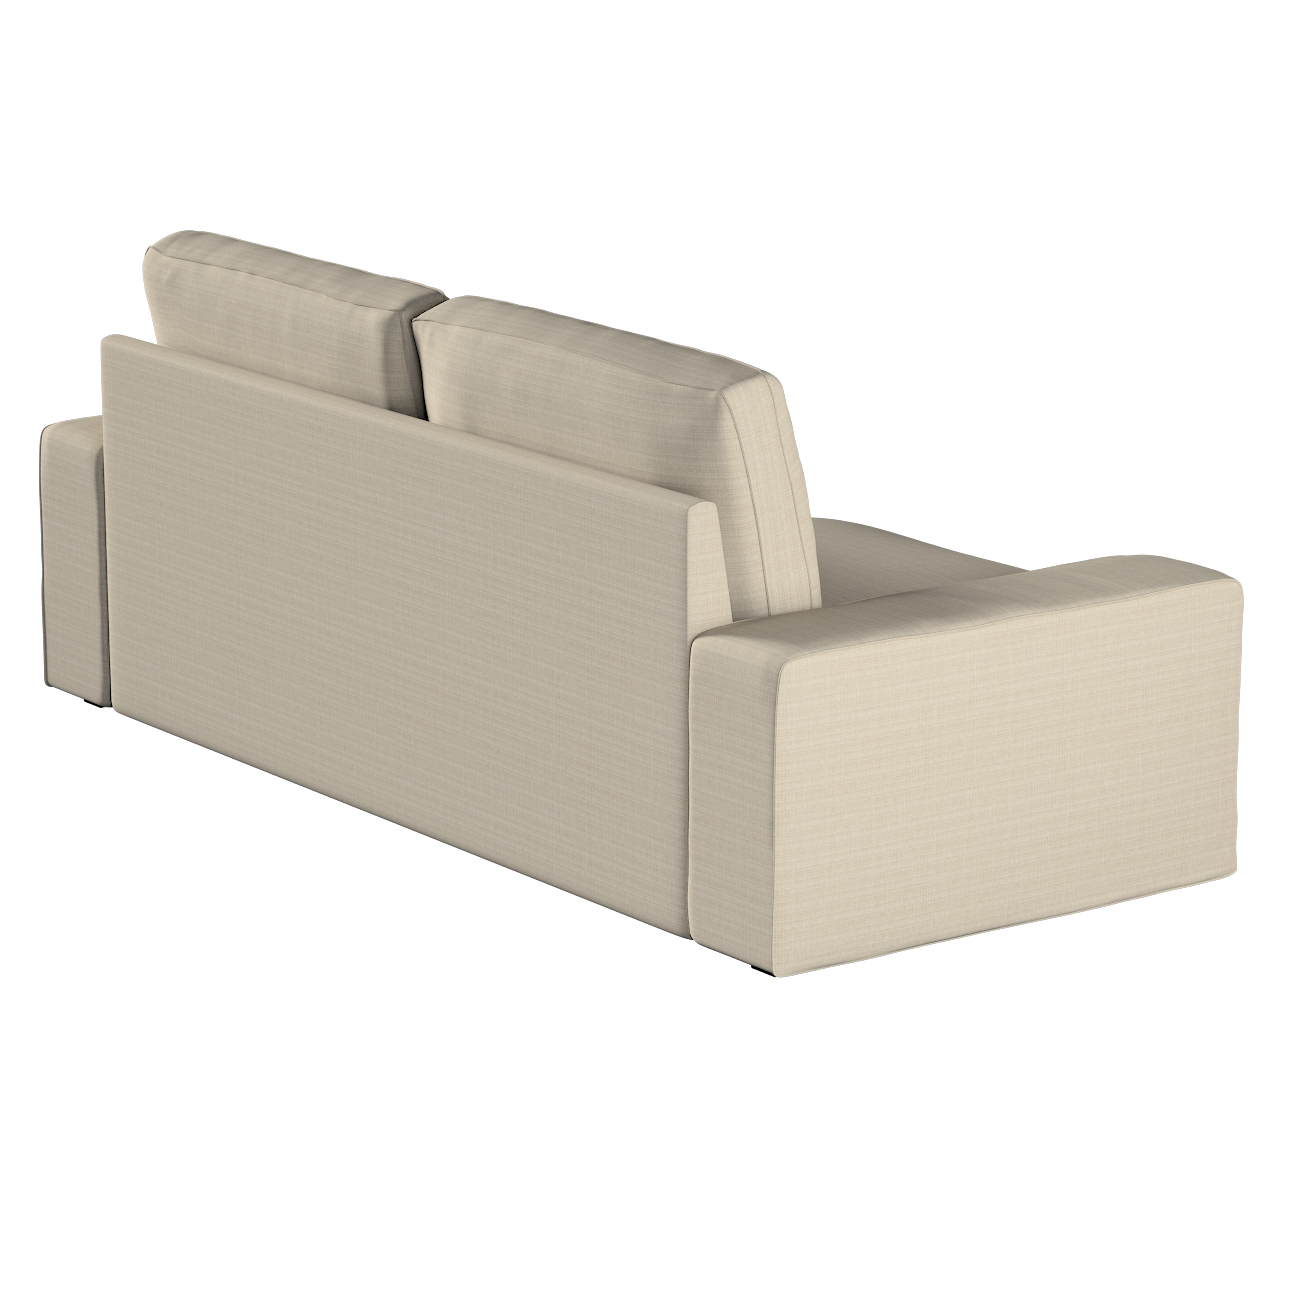 Bezug für Kivik 3-Sitzer Sofa, beige, Bezug für Sofa Kivik 3-Sitzer, Living günstig online kaufen